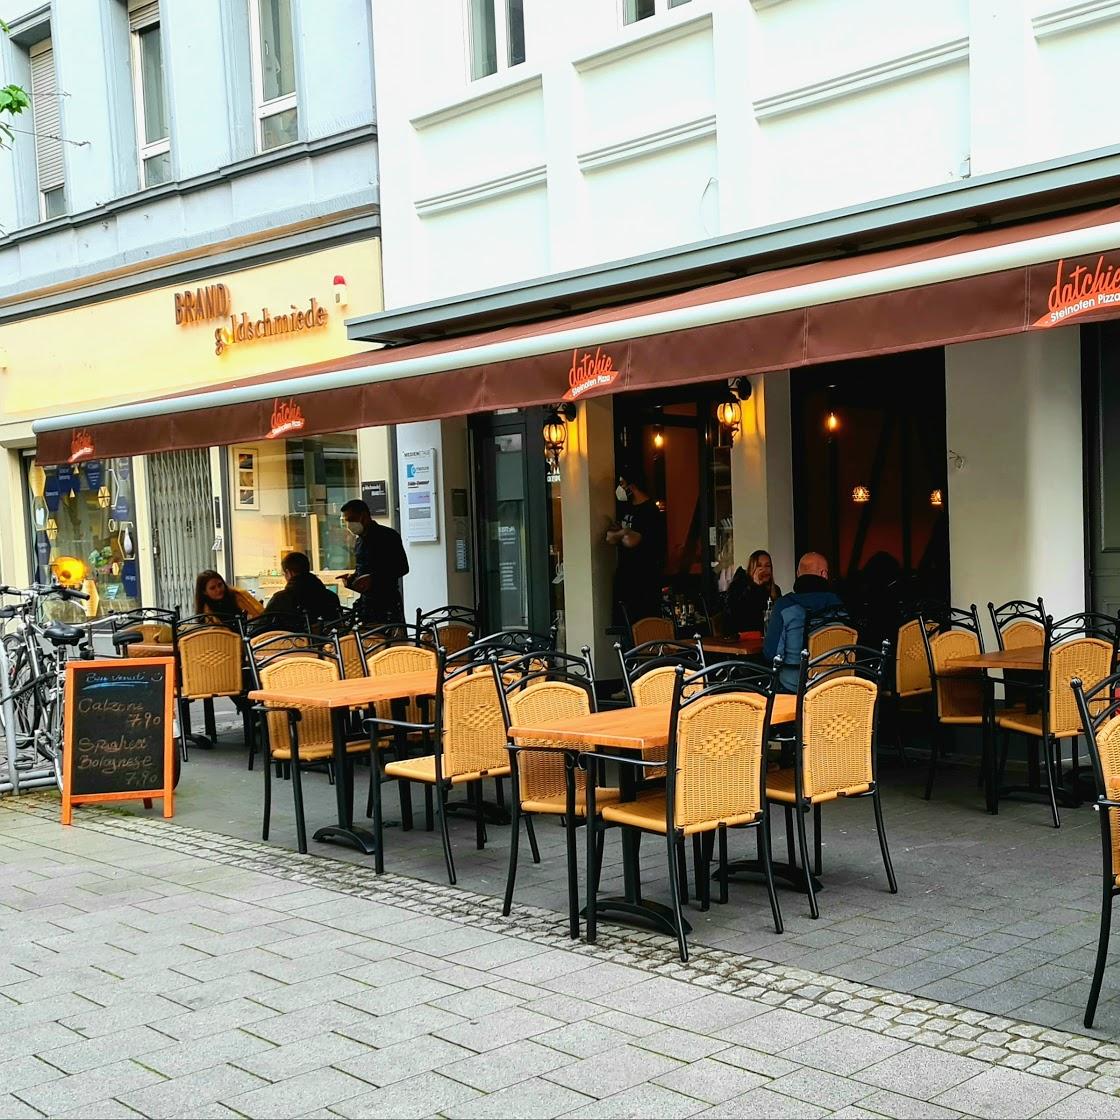 Restaurant "datchie Steinofen Pizza" in Bonn